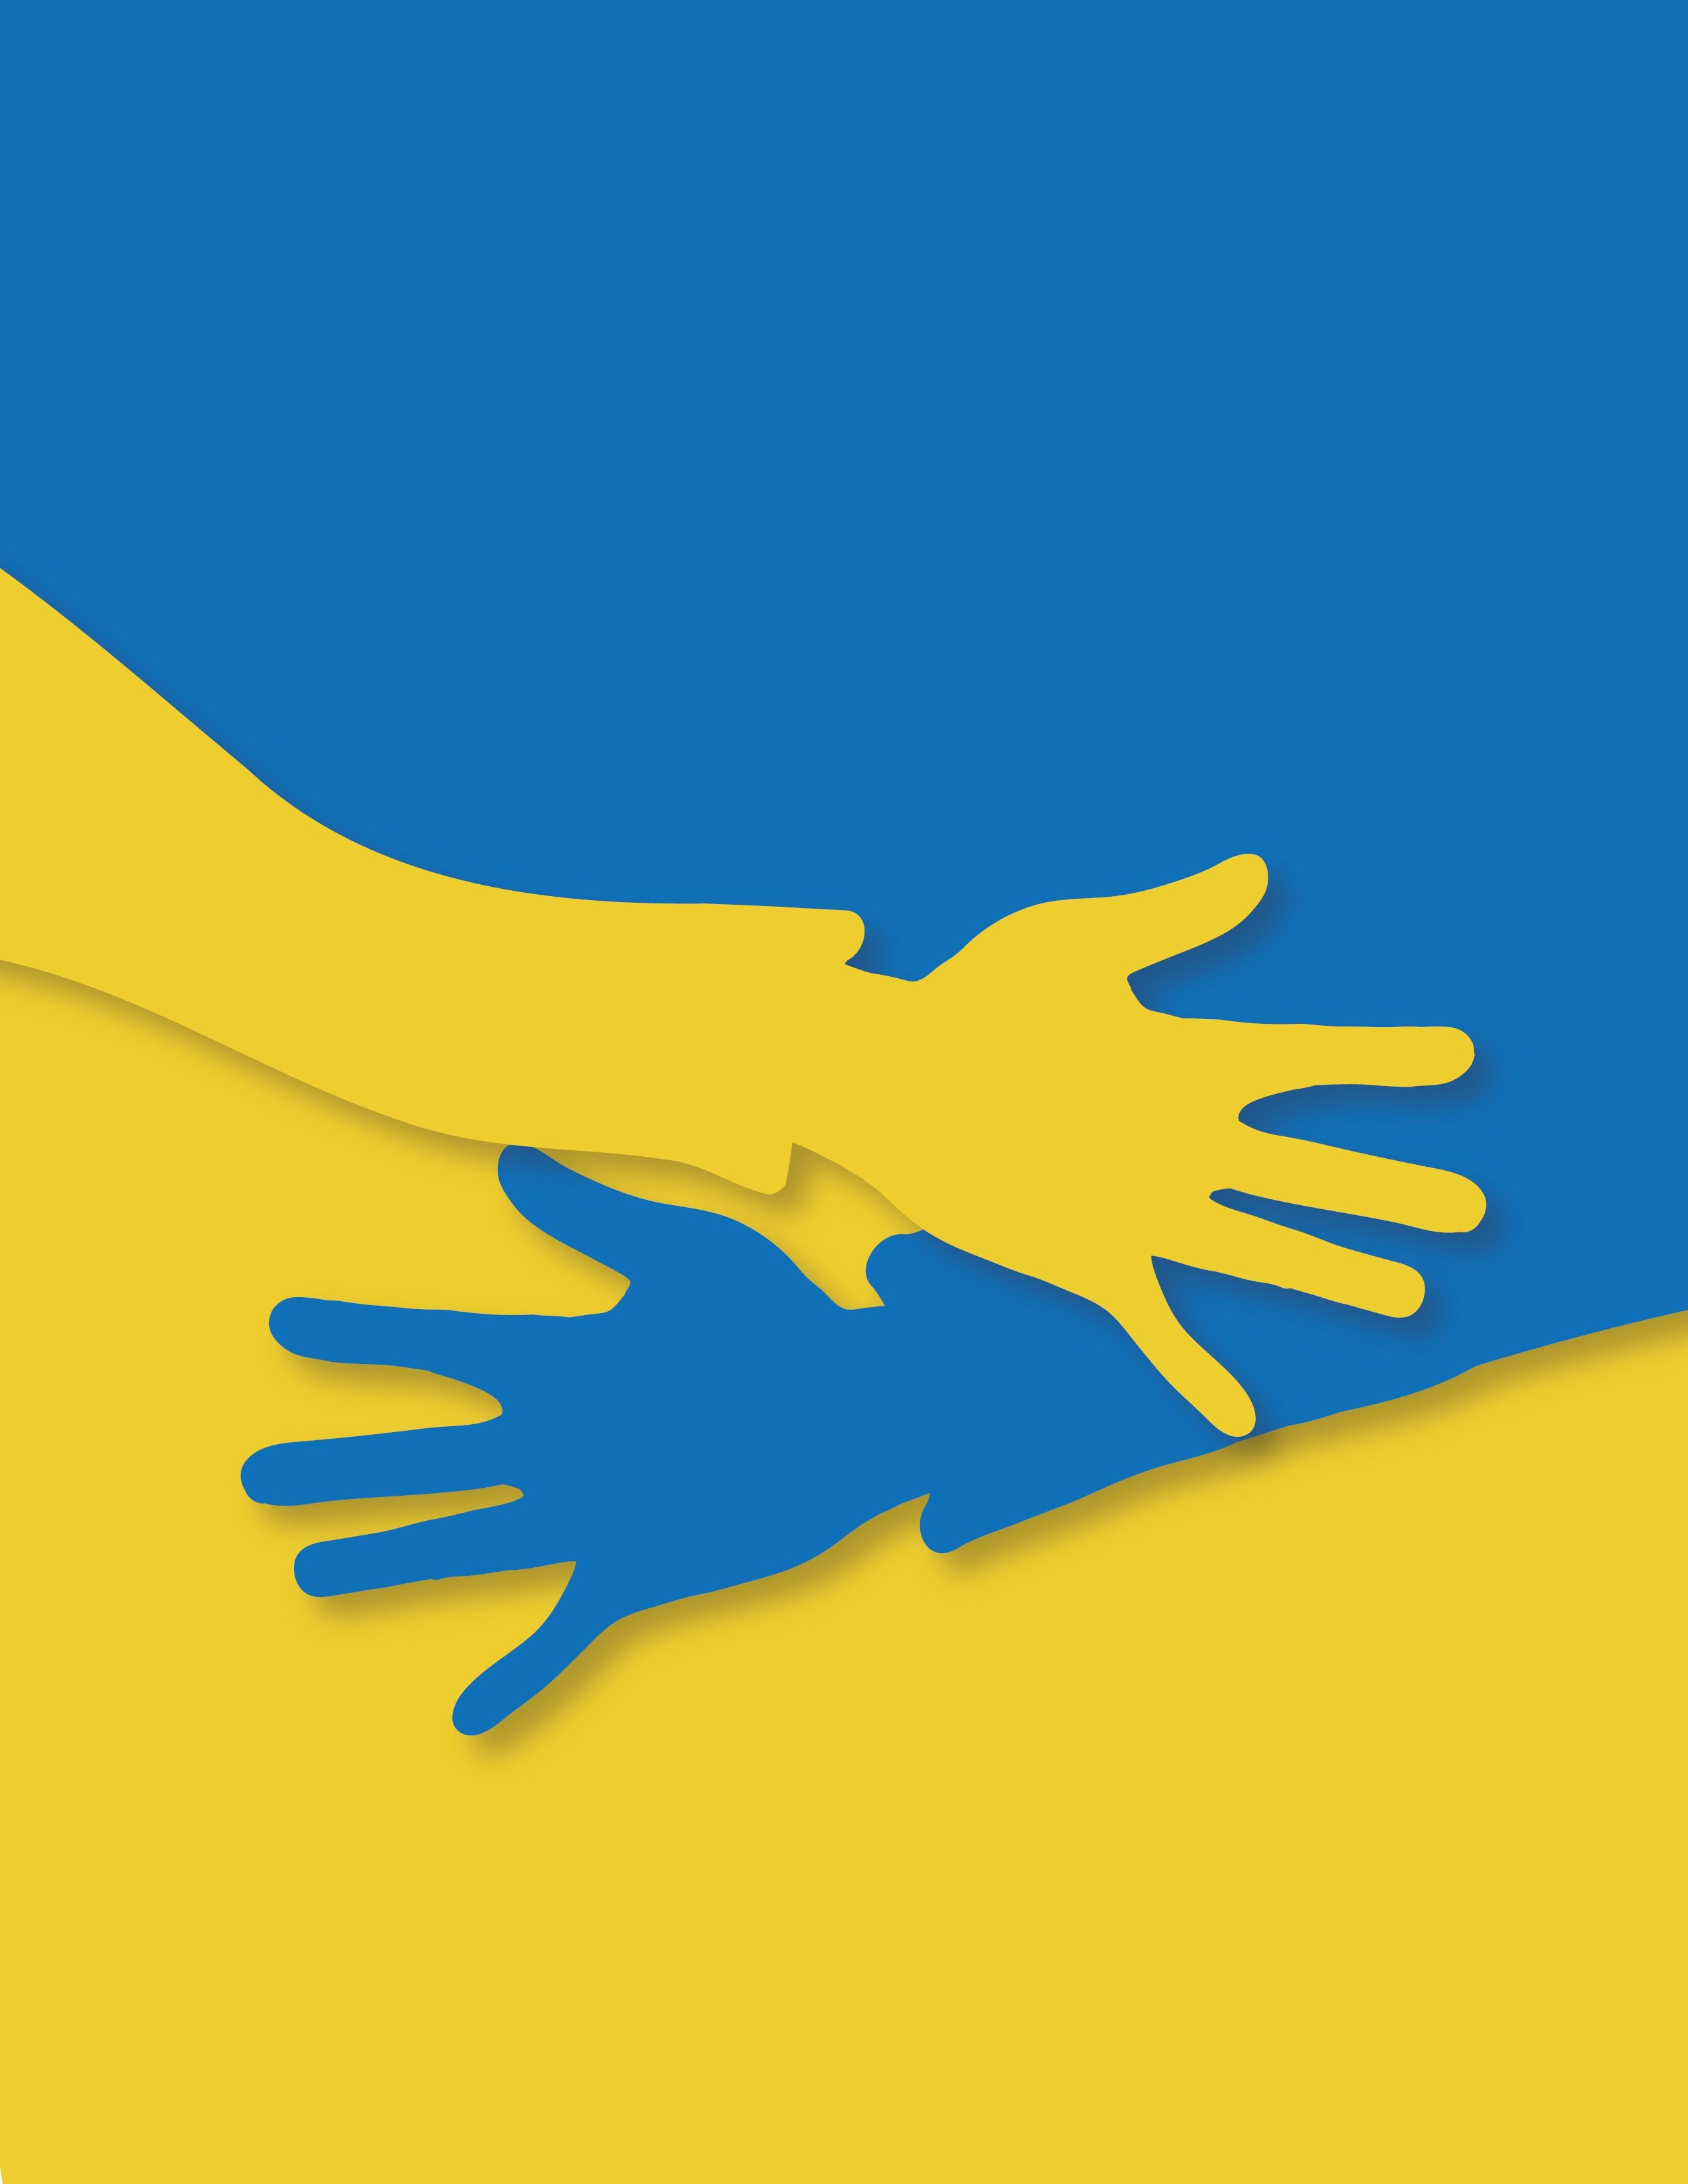 Ukraine Farben und 2 Hände